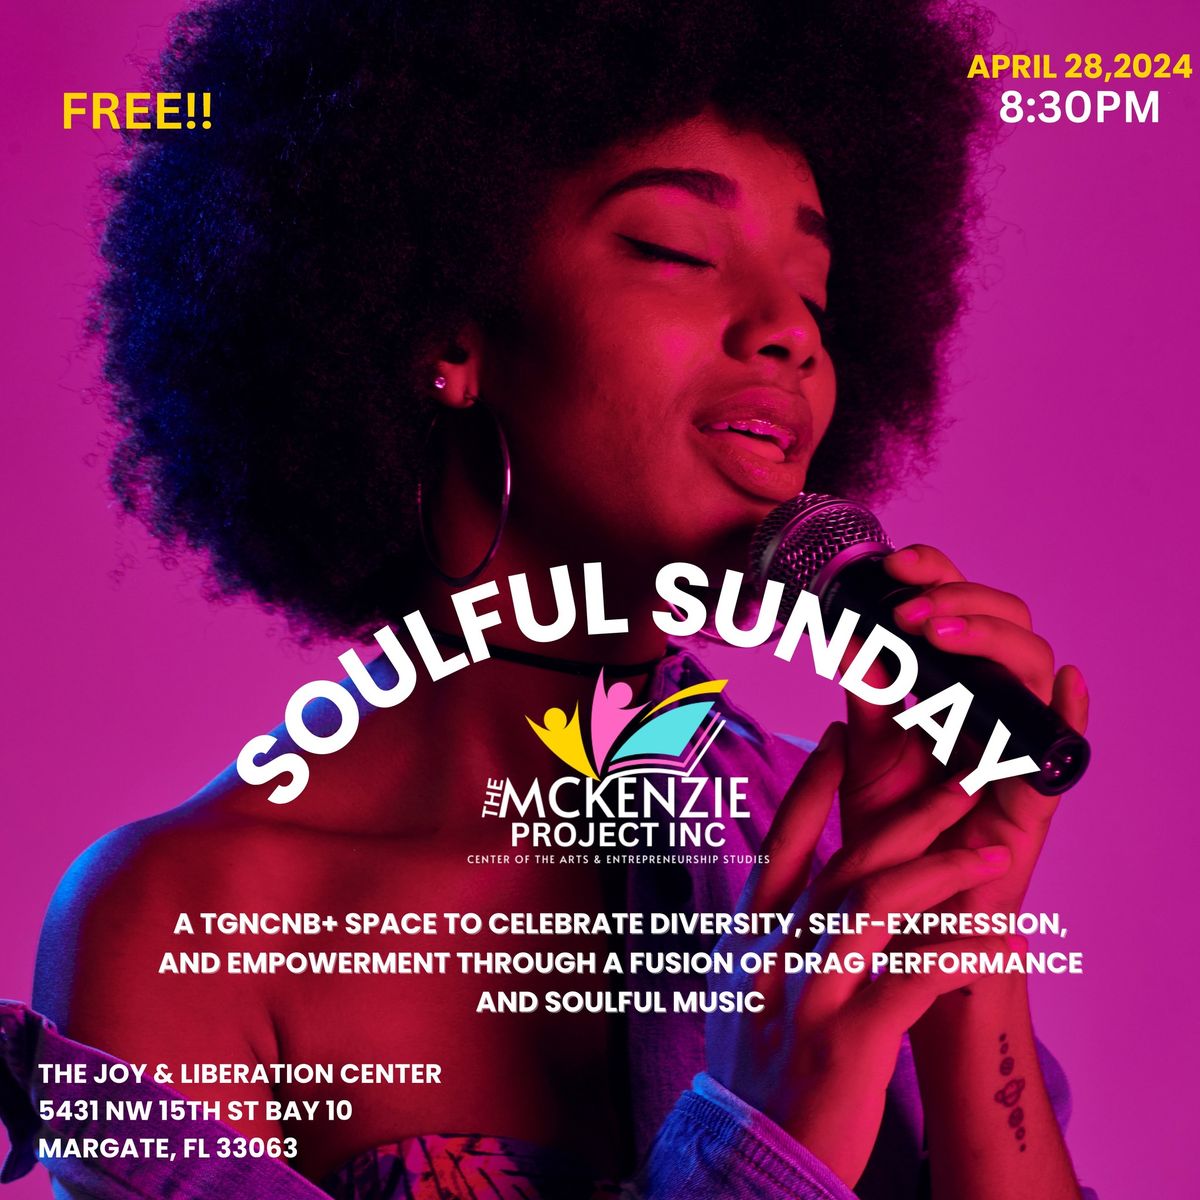 Soulful Sunday's 